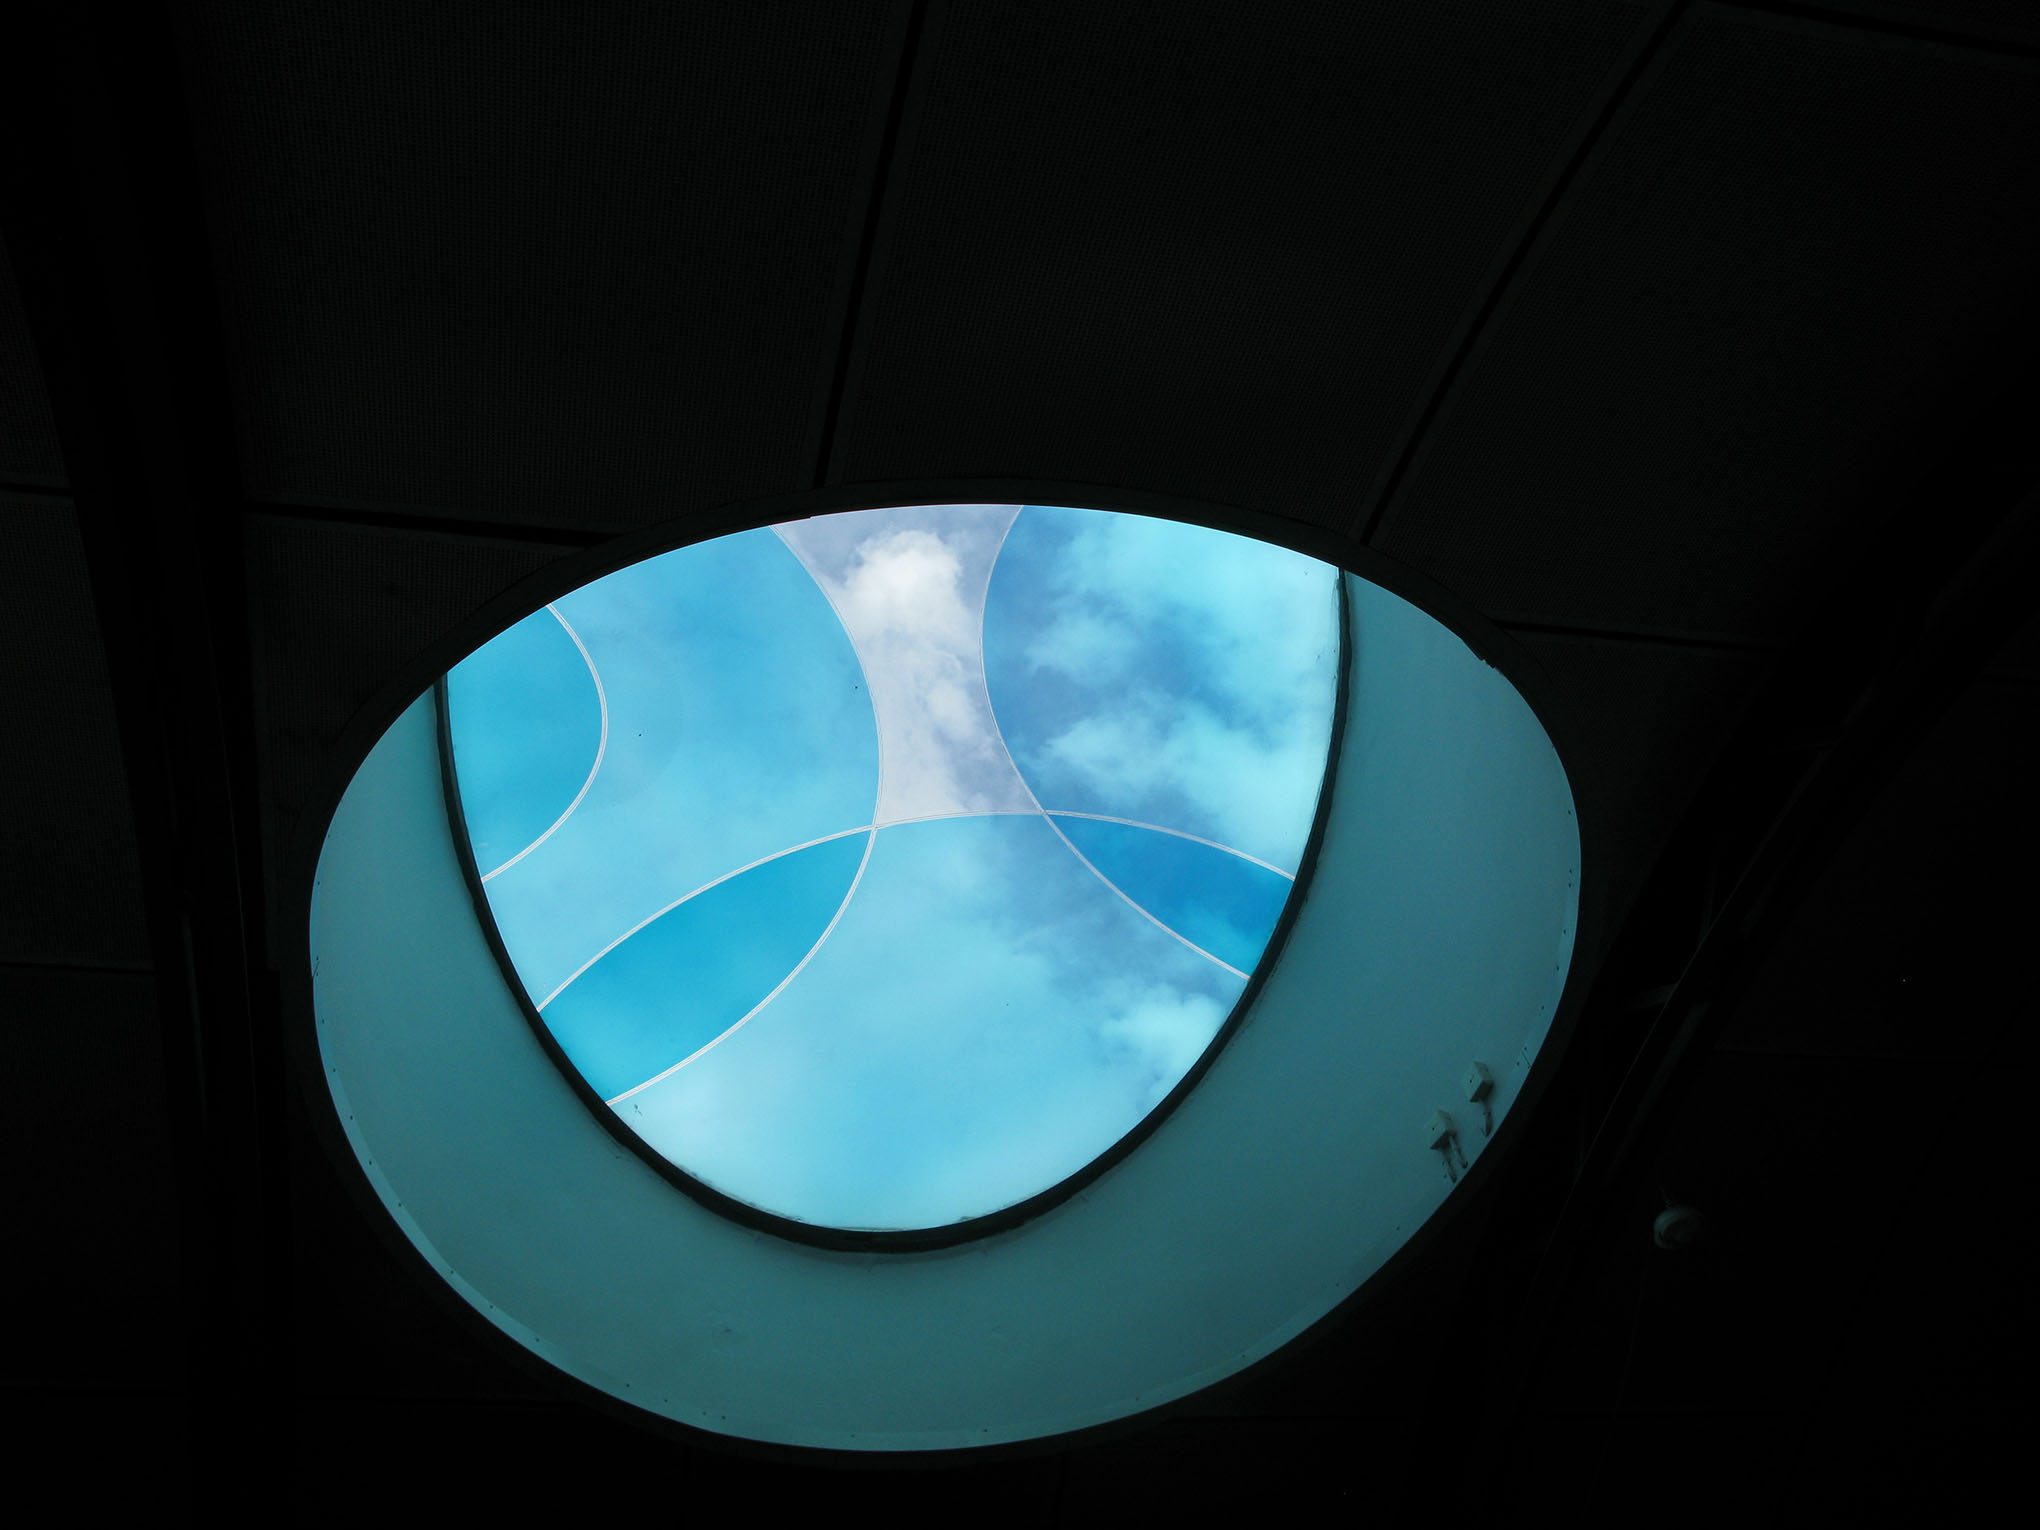 Ett blått halvrunt fönster med olika mönster och med en svart bakgrund.